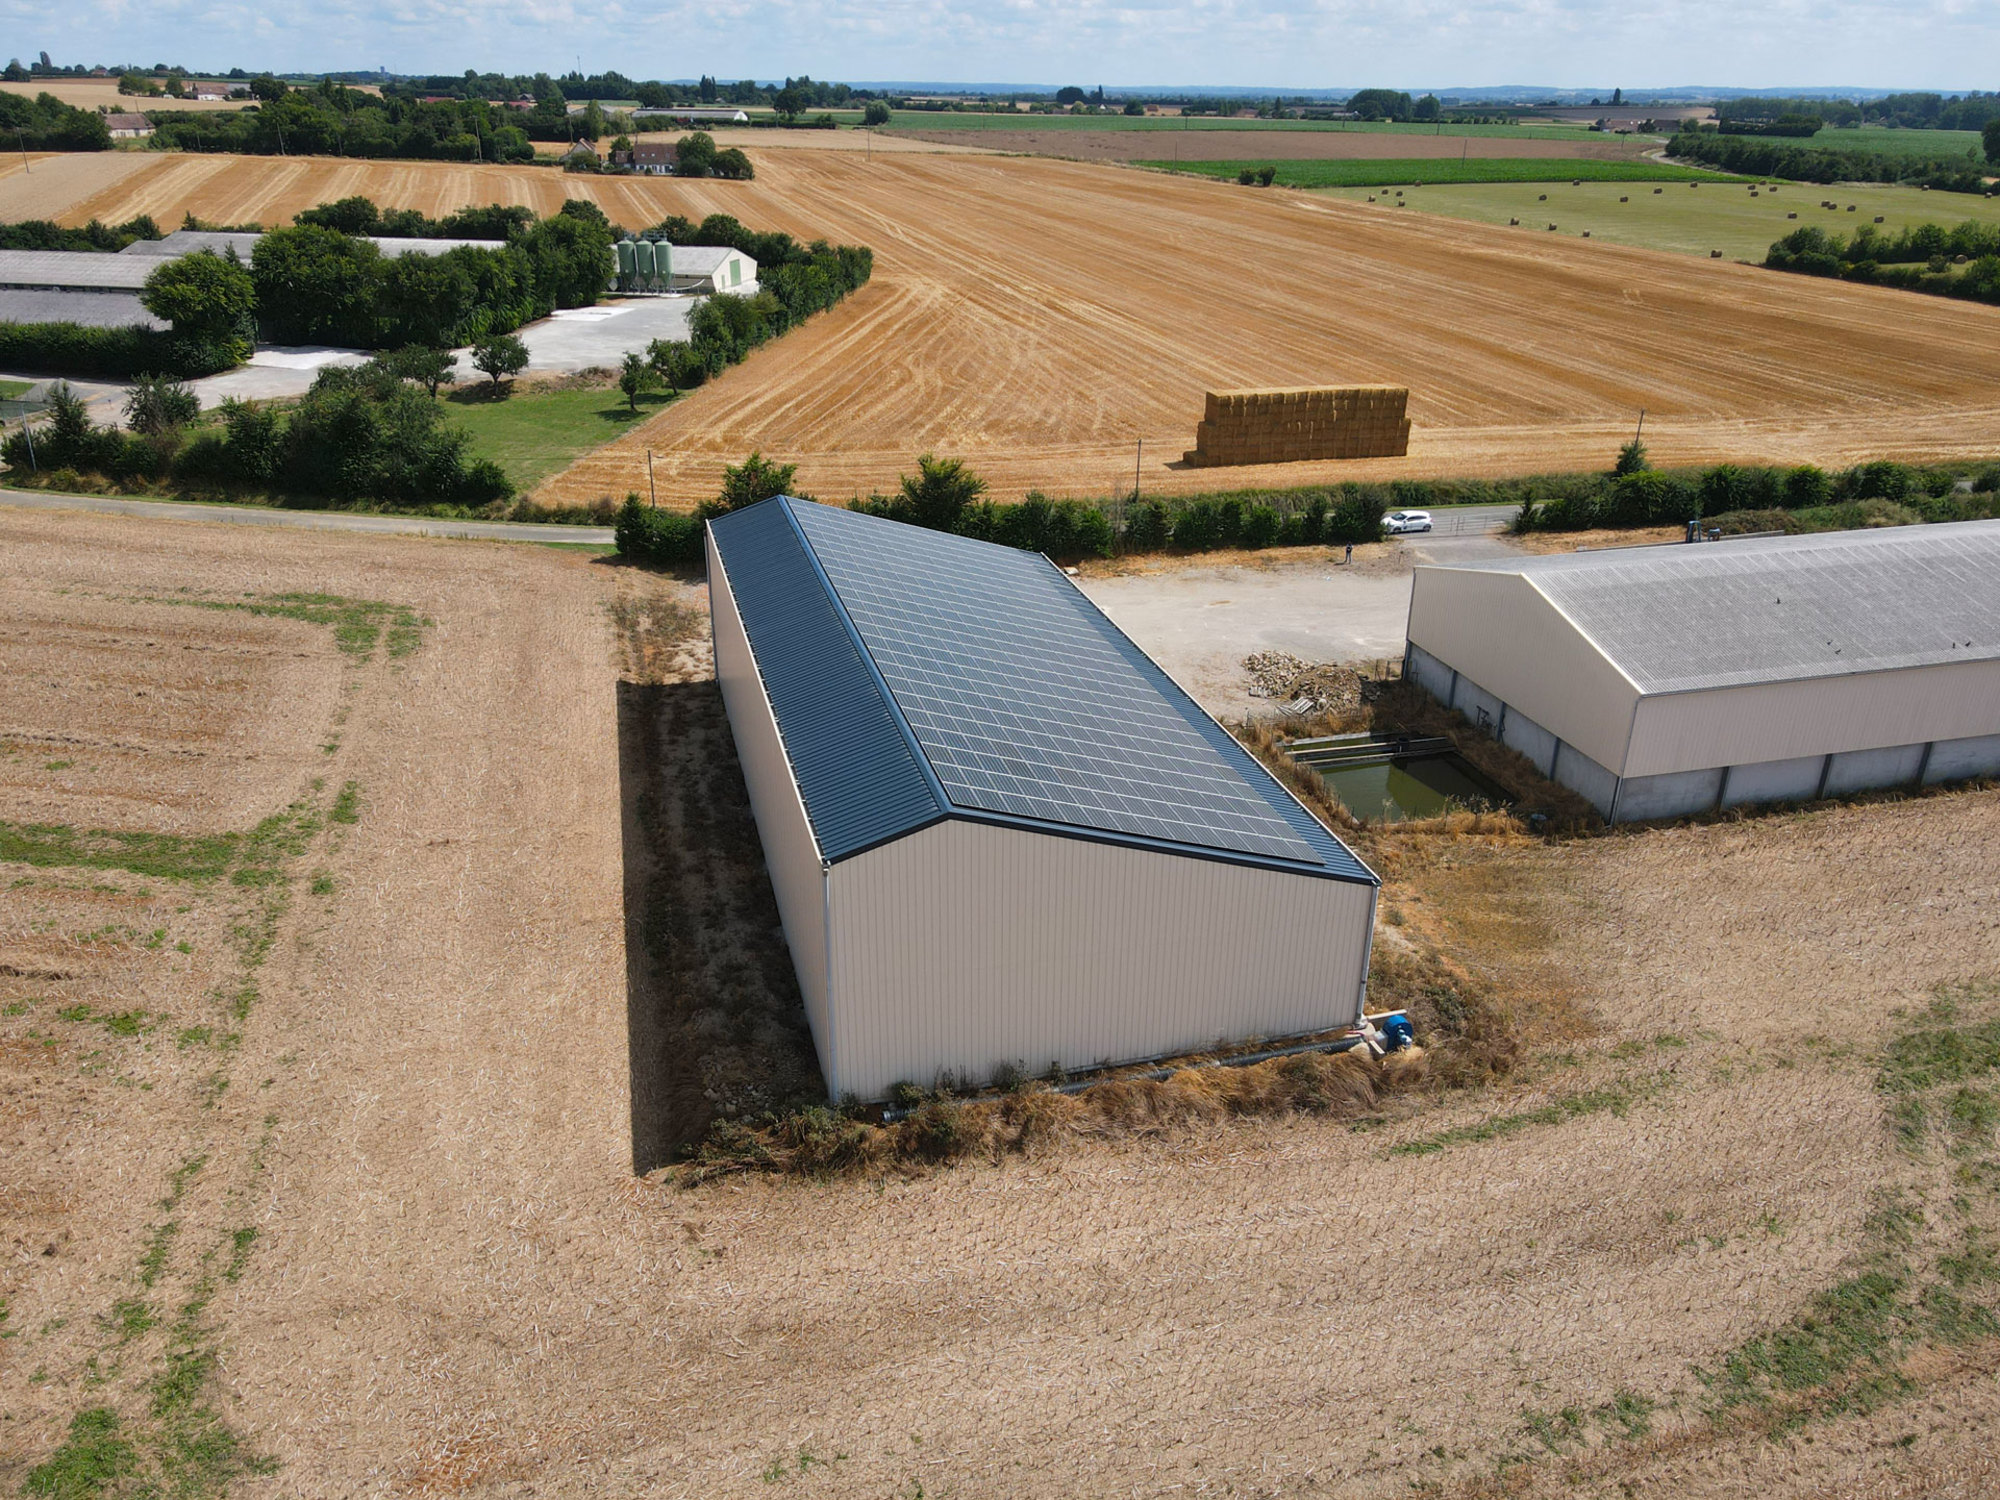 Conception asymétrique d'un bâtiment agricole solaire par Le Triangle, illustrant une approche innovante de l'agrivoltaïsme.